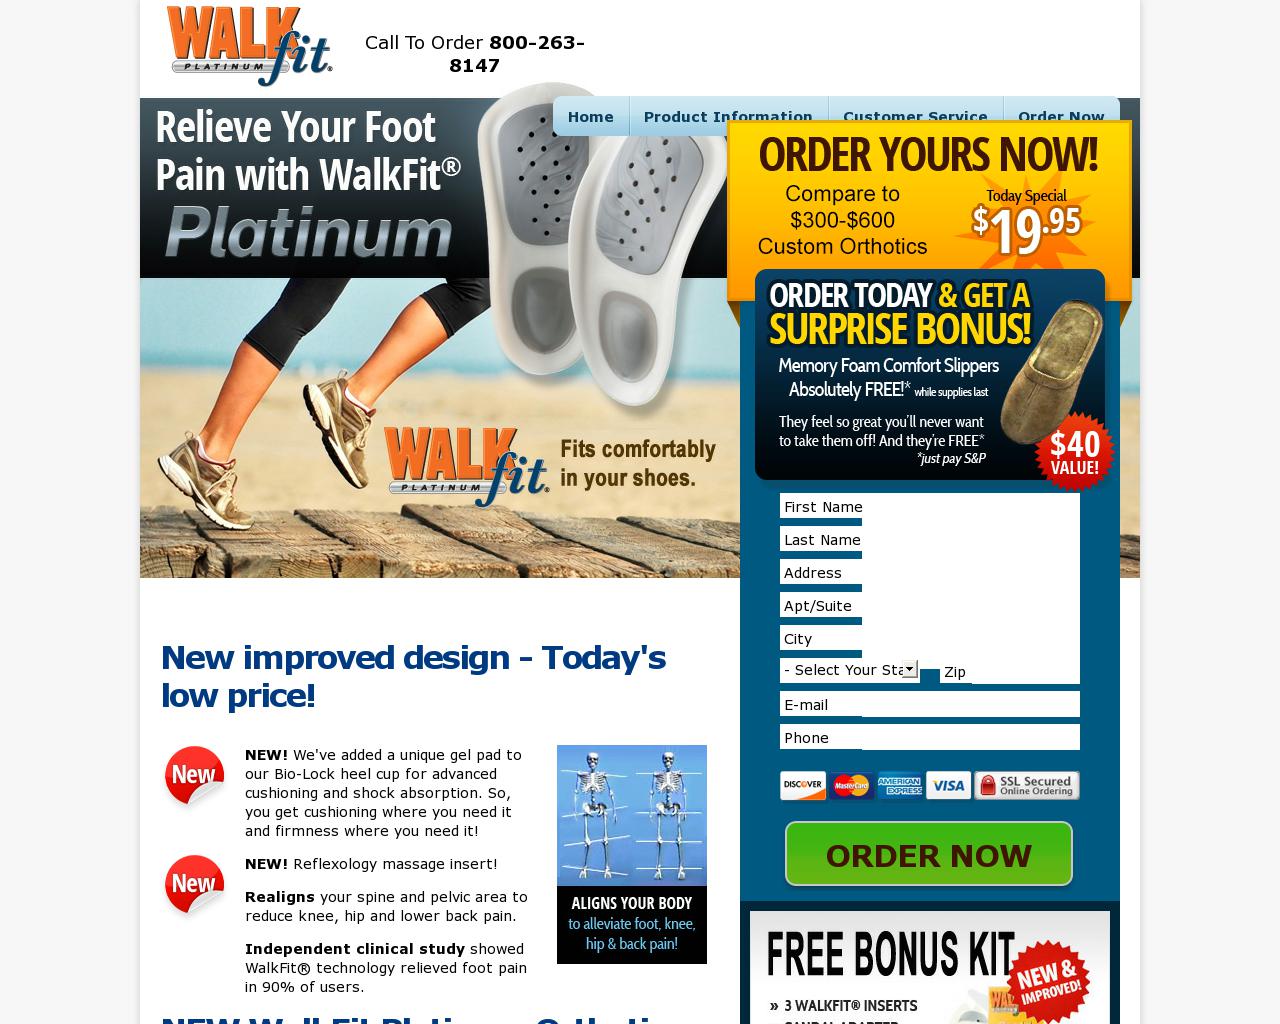 walkfit.com